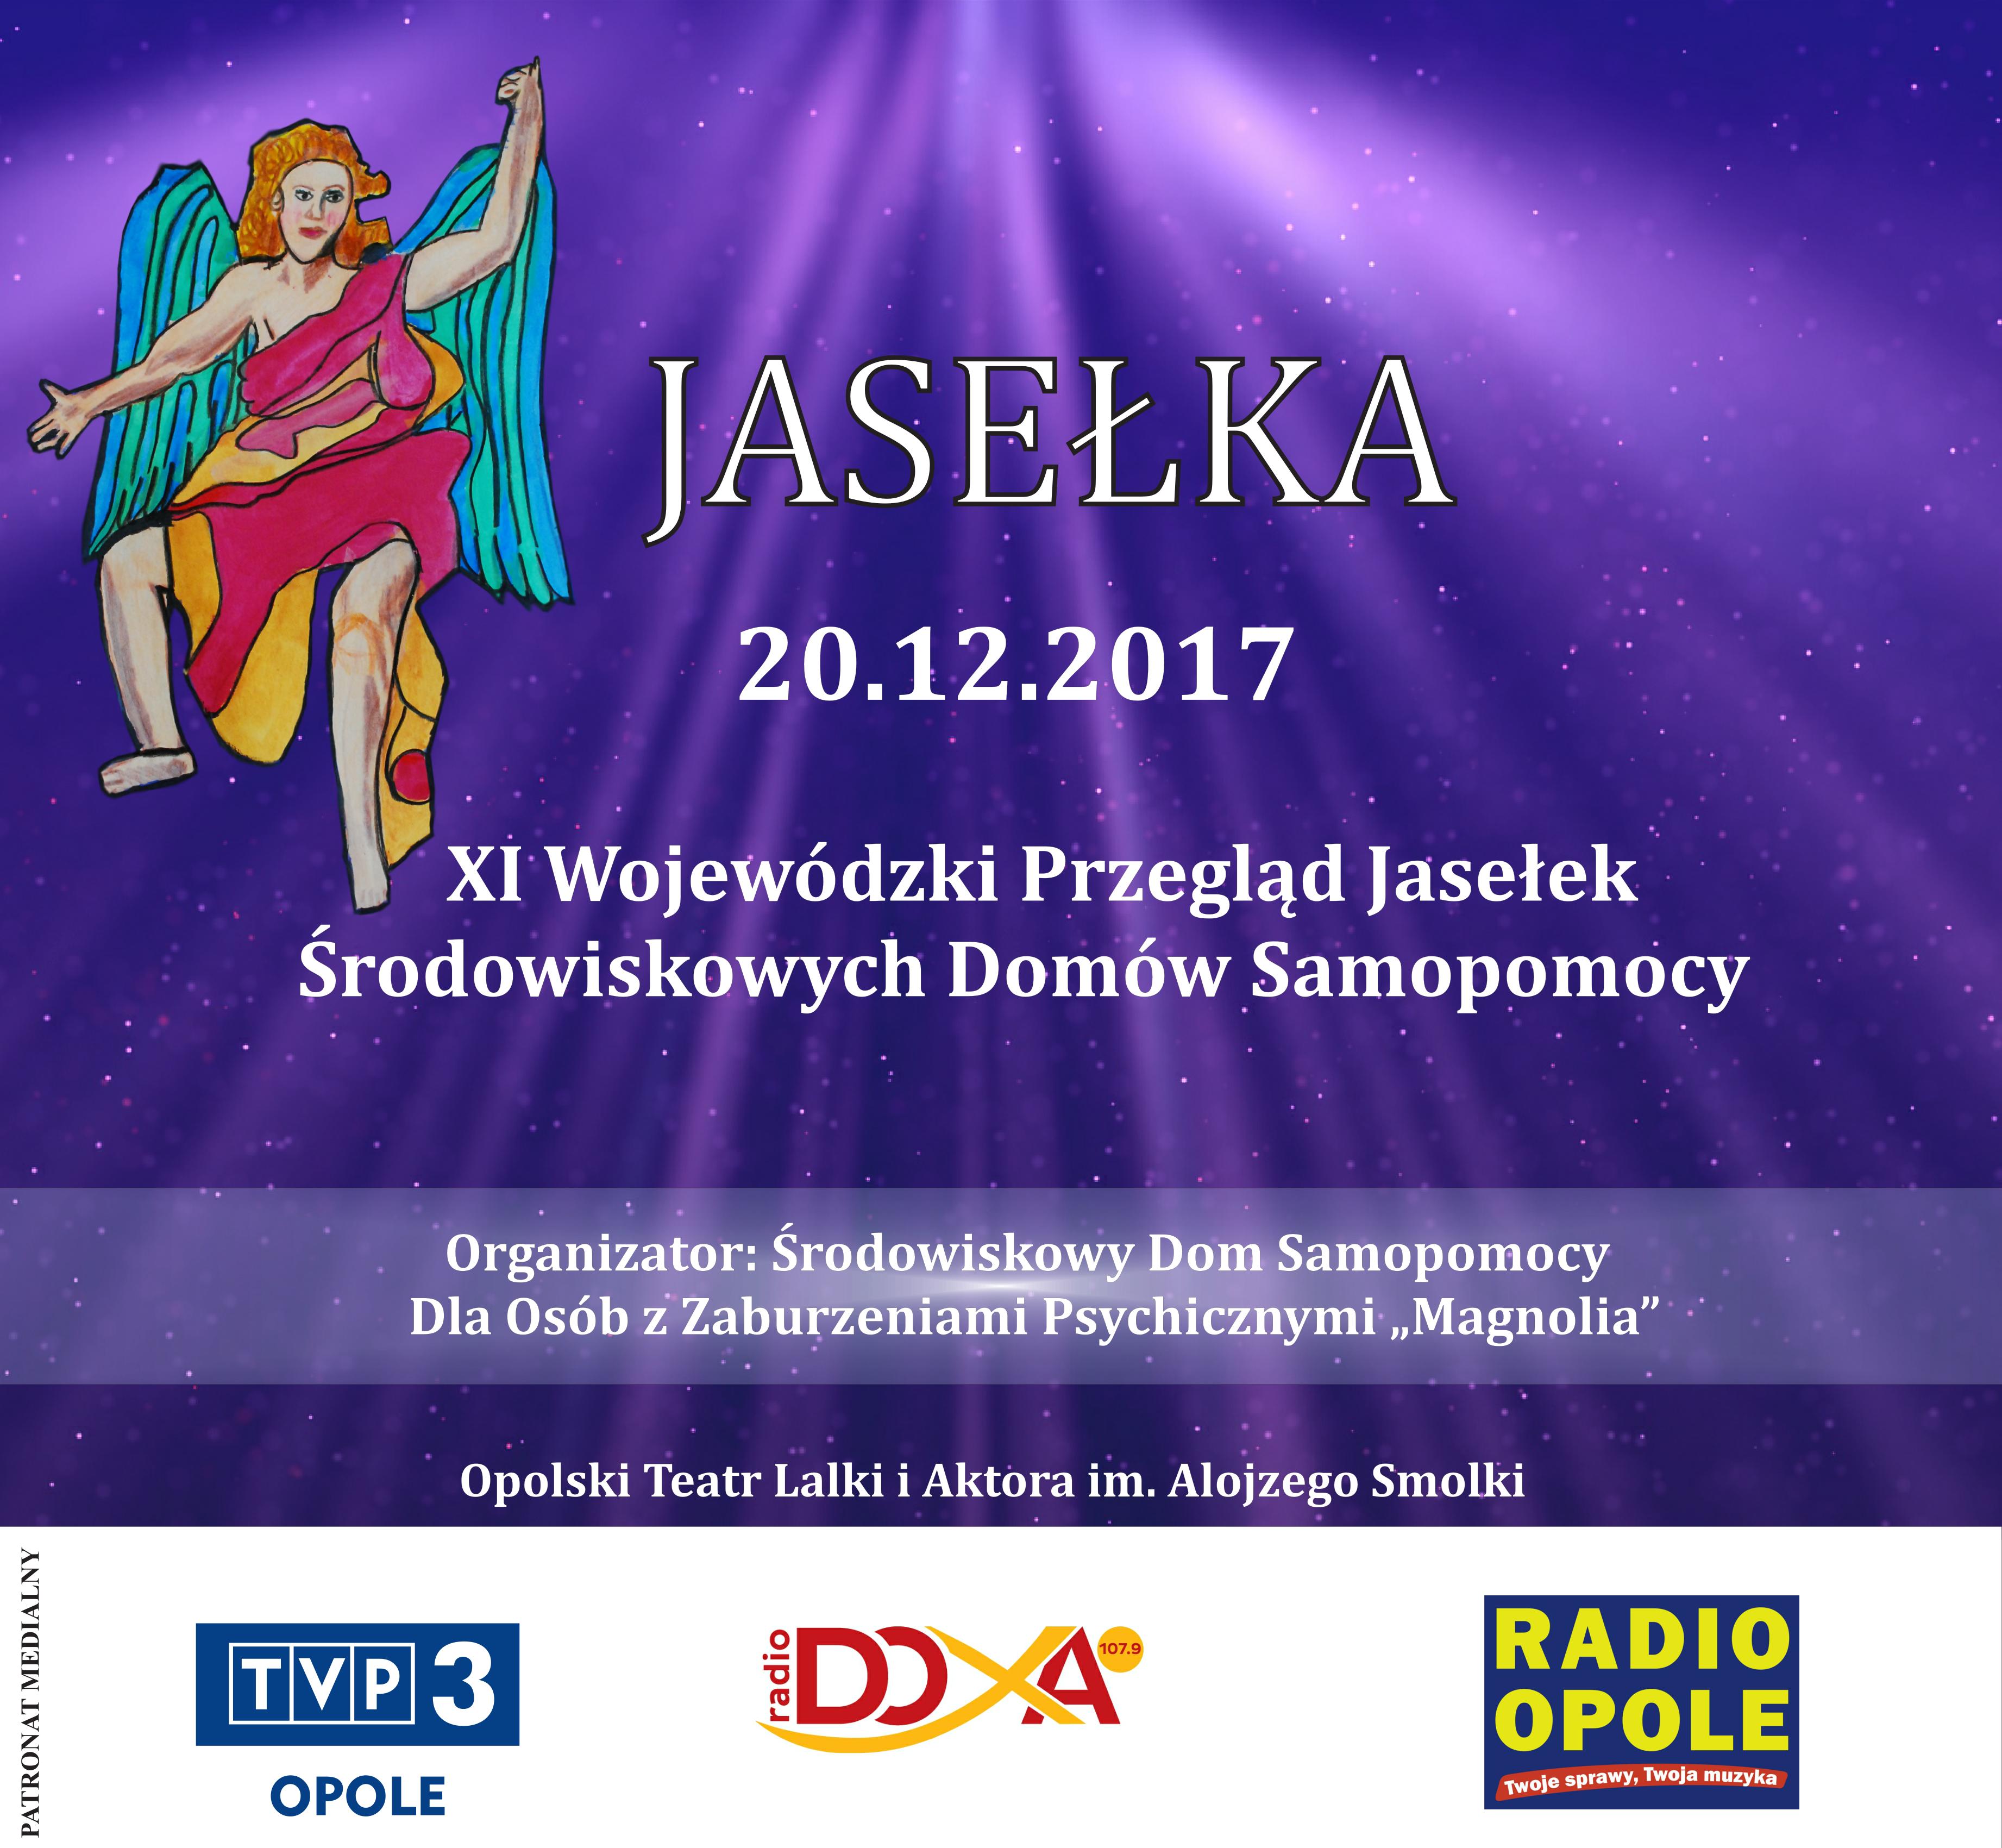 Wyjątkowy przegląd jasełek w Opolskim Teatrze Lalki i Aktora już w środę (20.12)